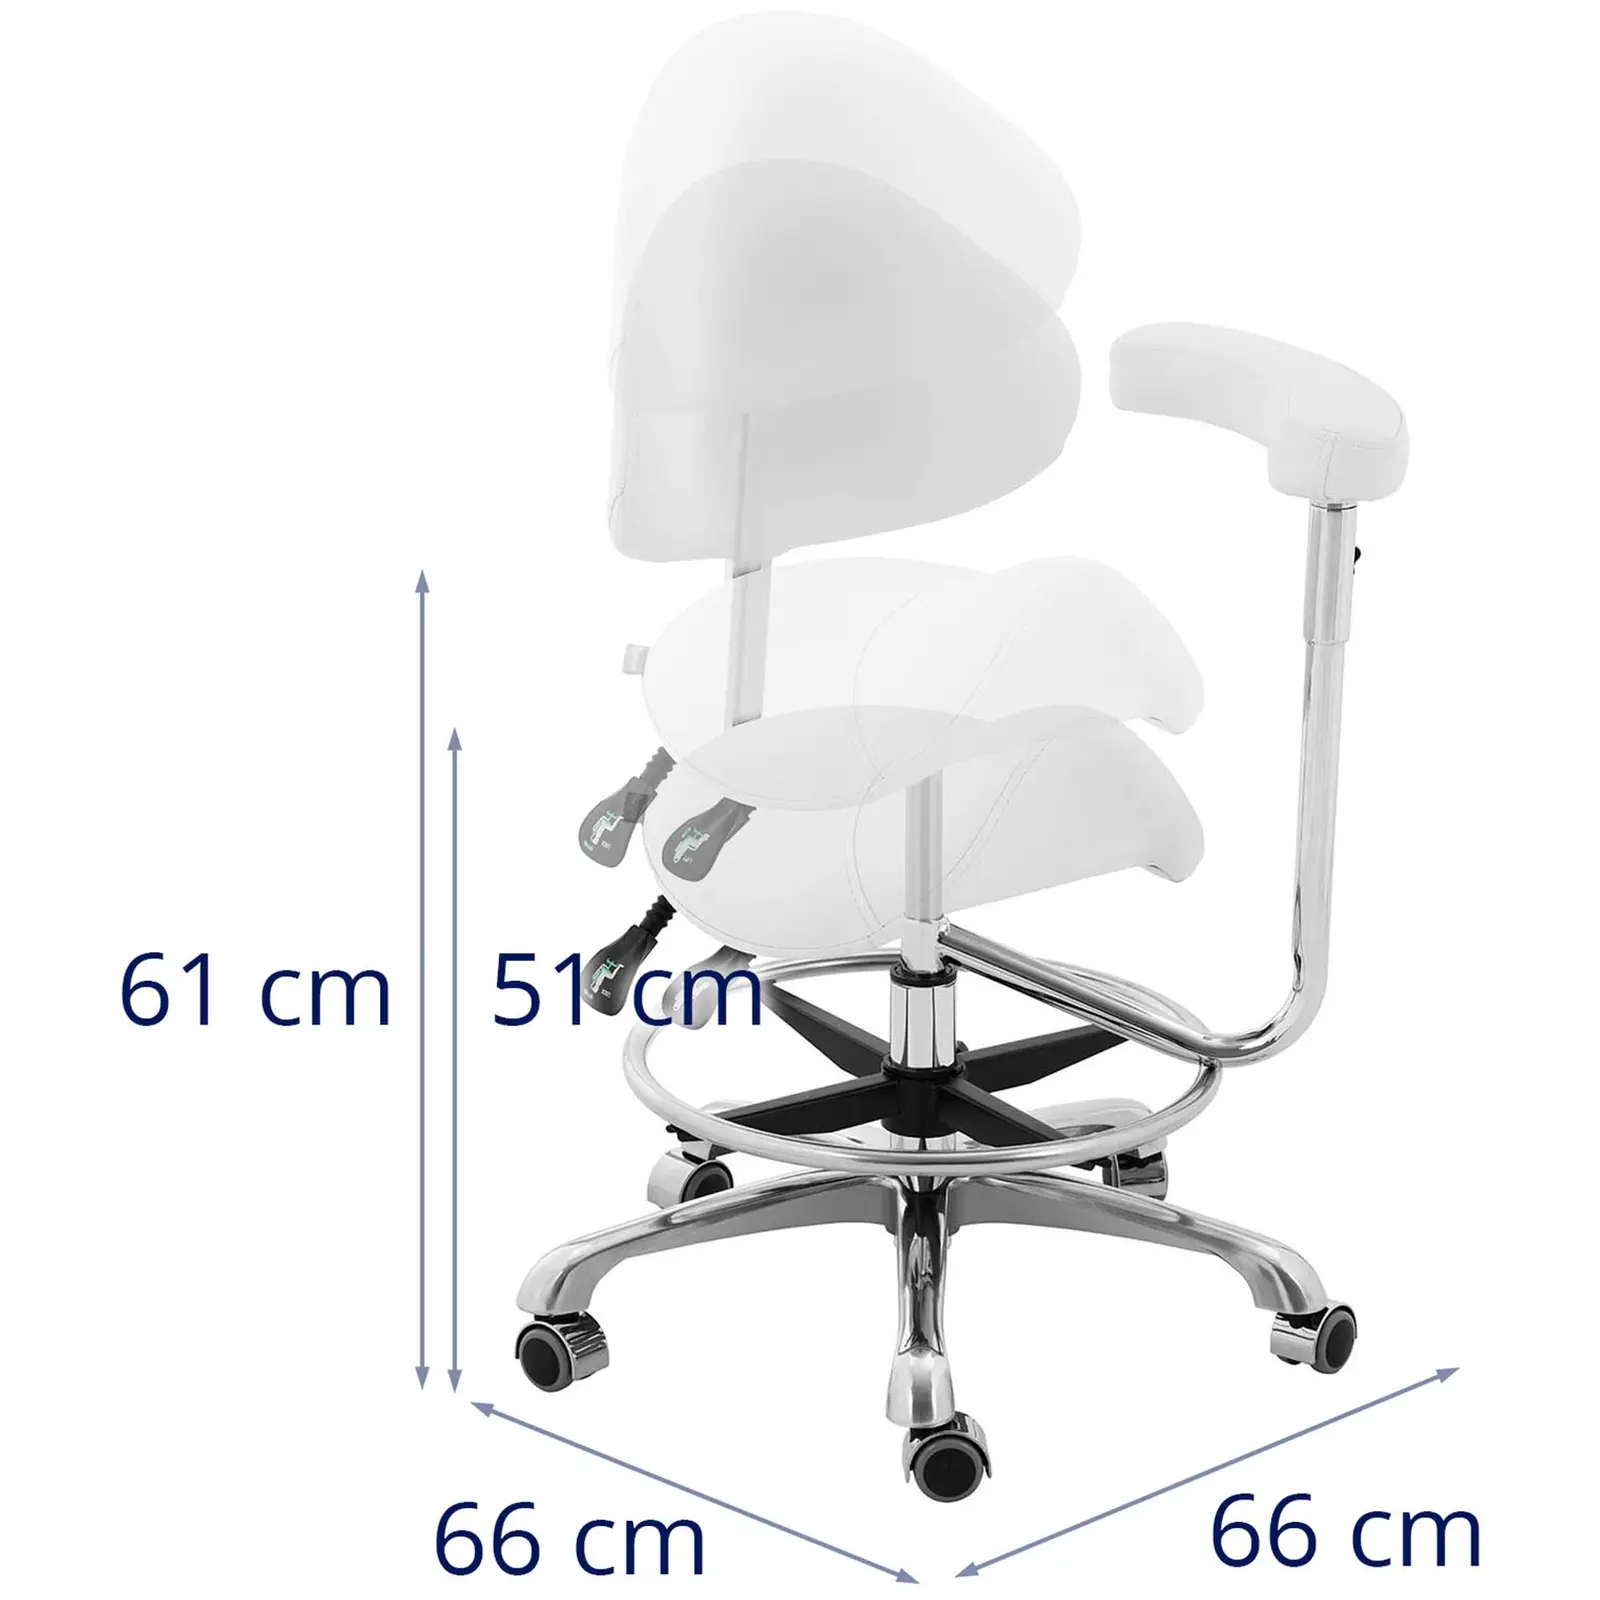 Sadelstol - armlene - høydejusterbar ryggstøtte og setehøyde - 51 - 61 cm - 150 kg - Fiolett